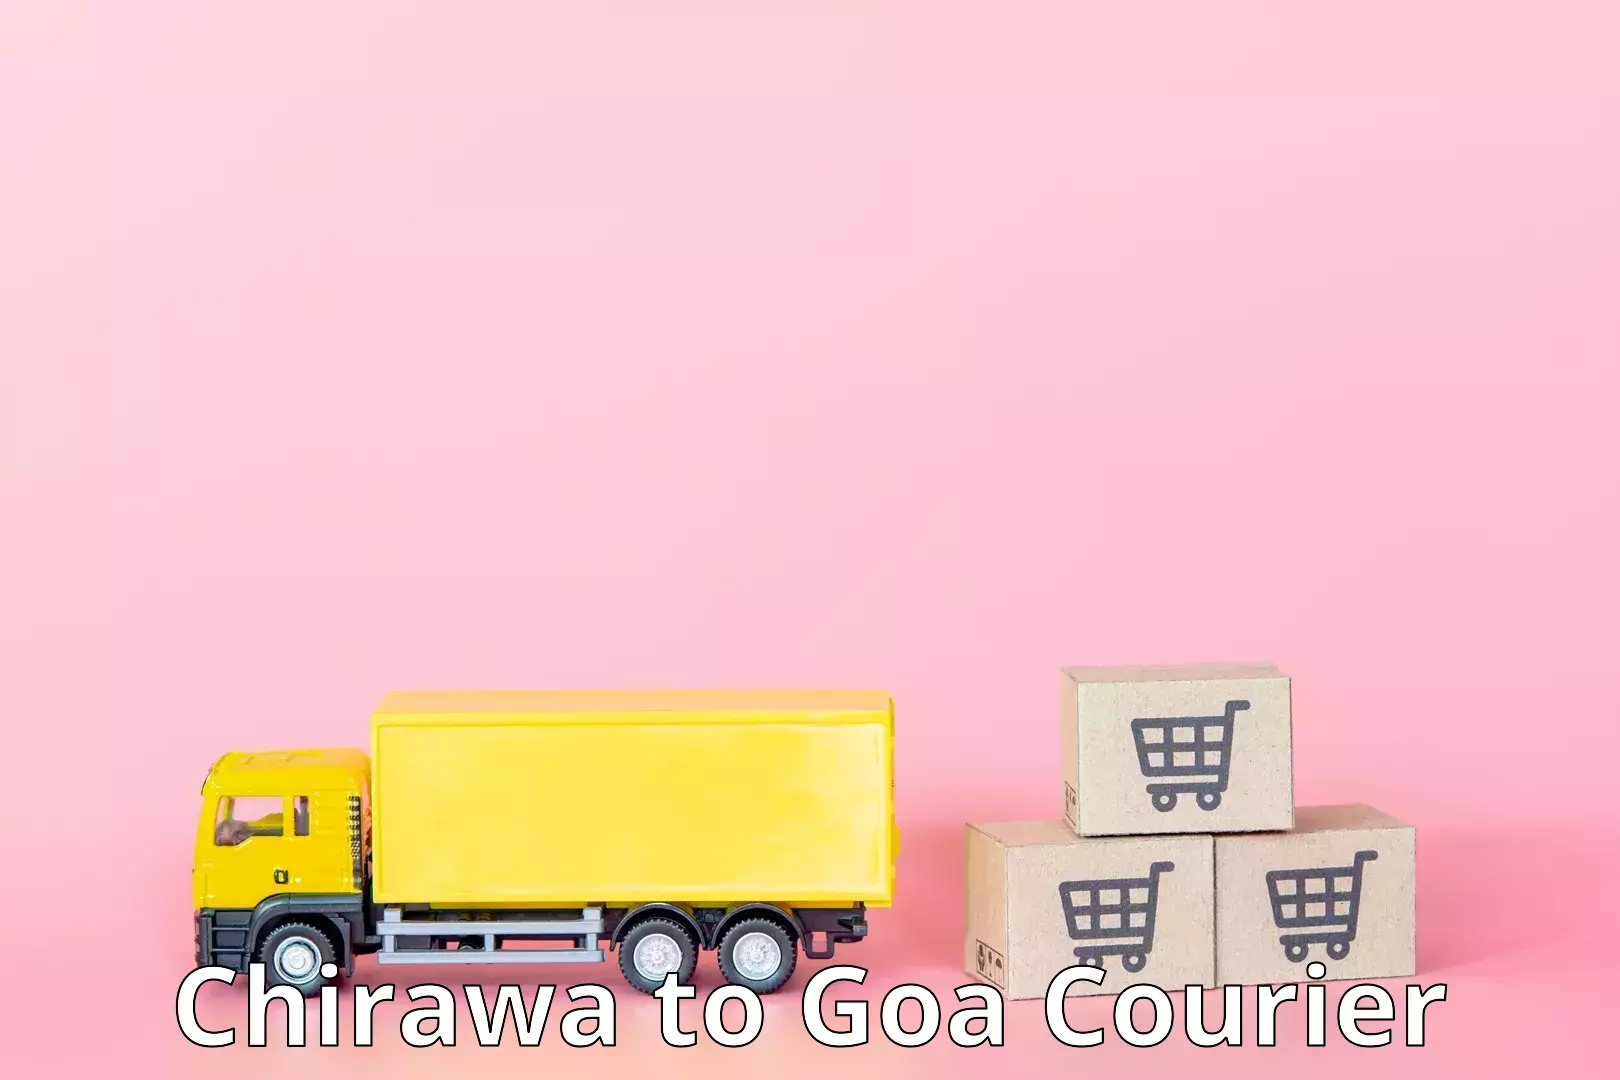 Express mail service Chirawa to NIT Goa